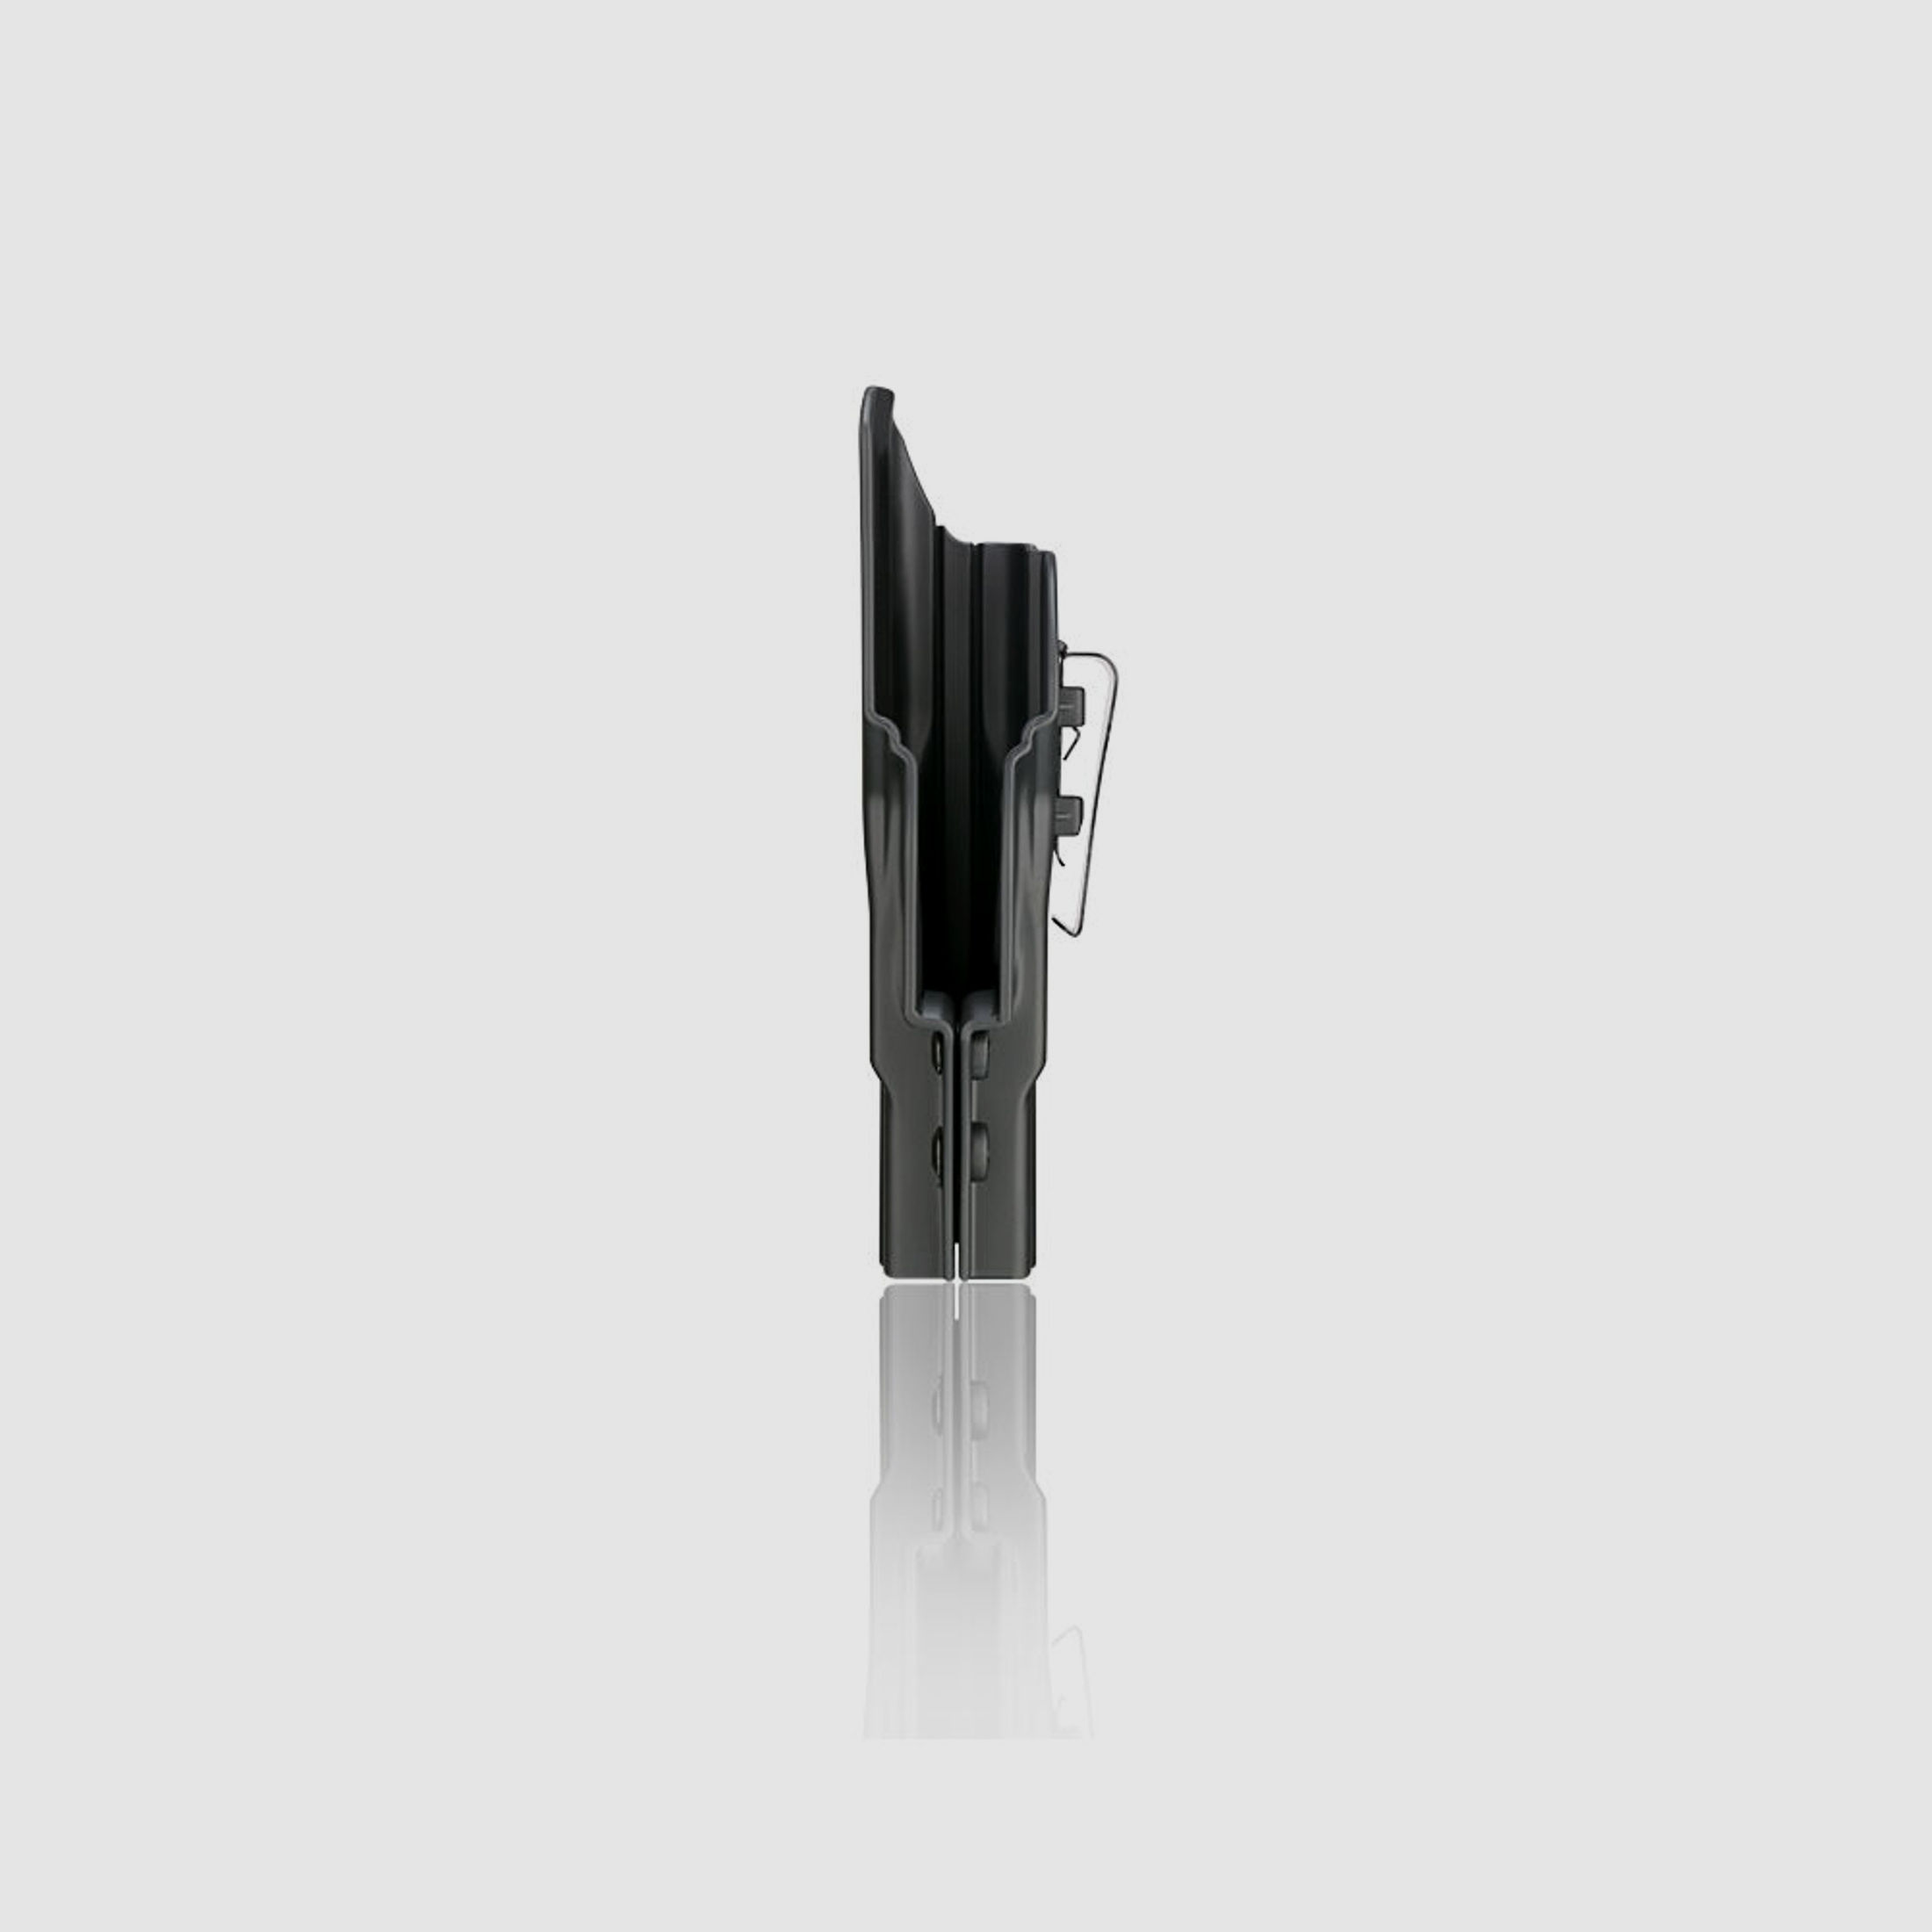 Cytac IWB Innenholster Gen 2 für Glock 19, 23, 32 Gen 1-4